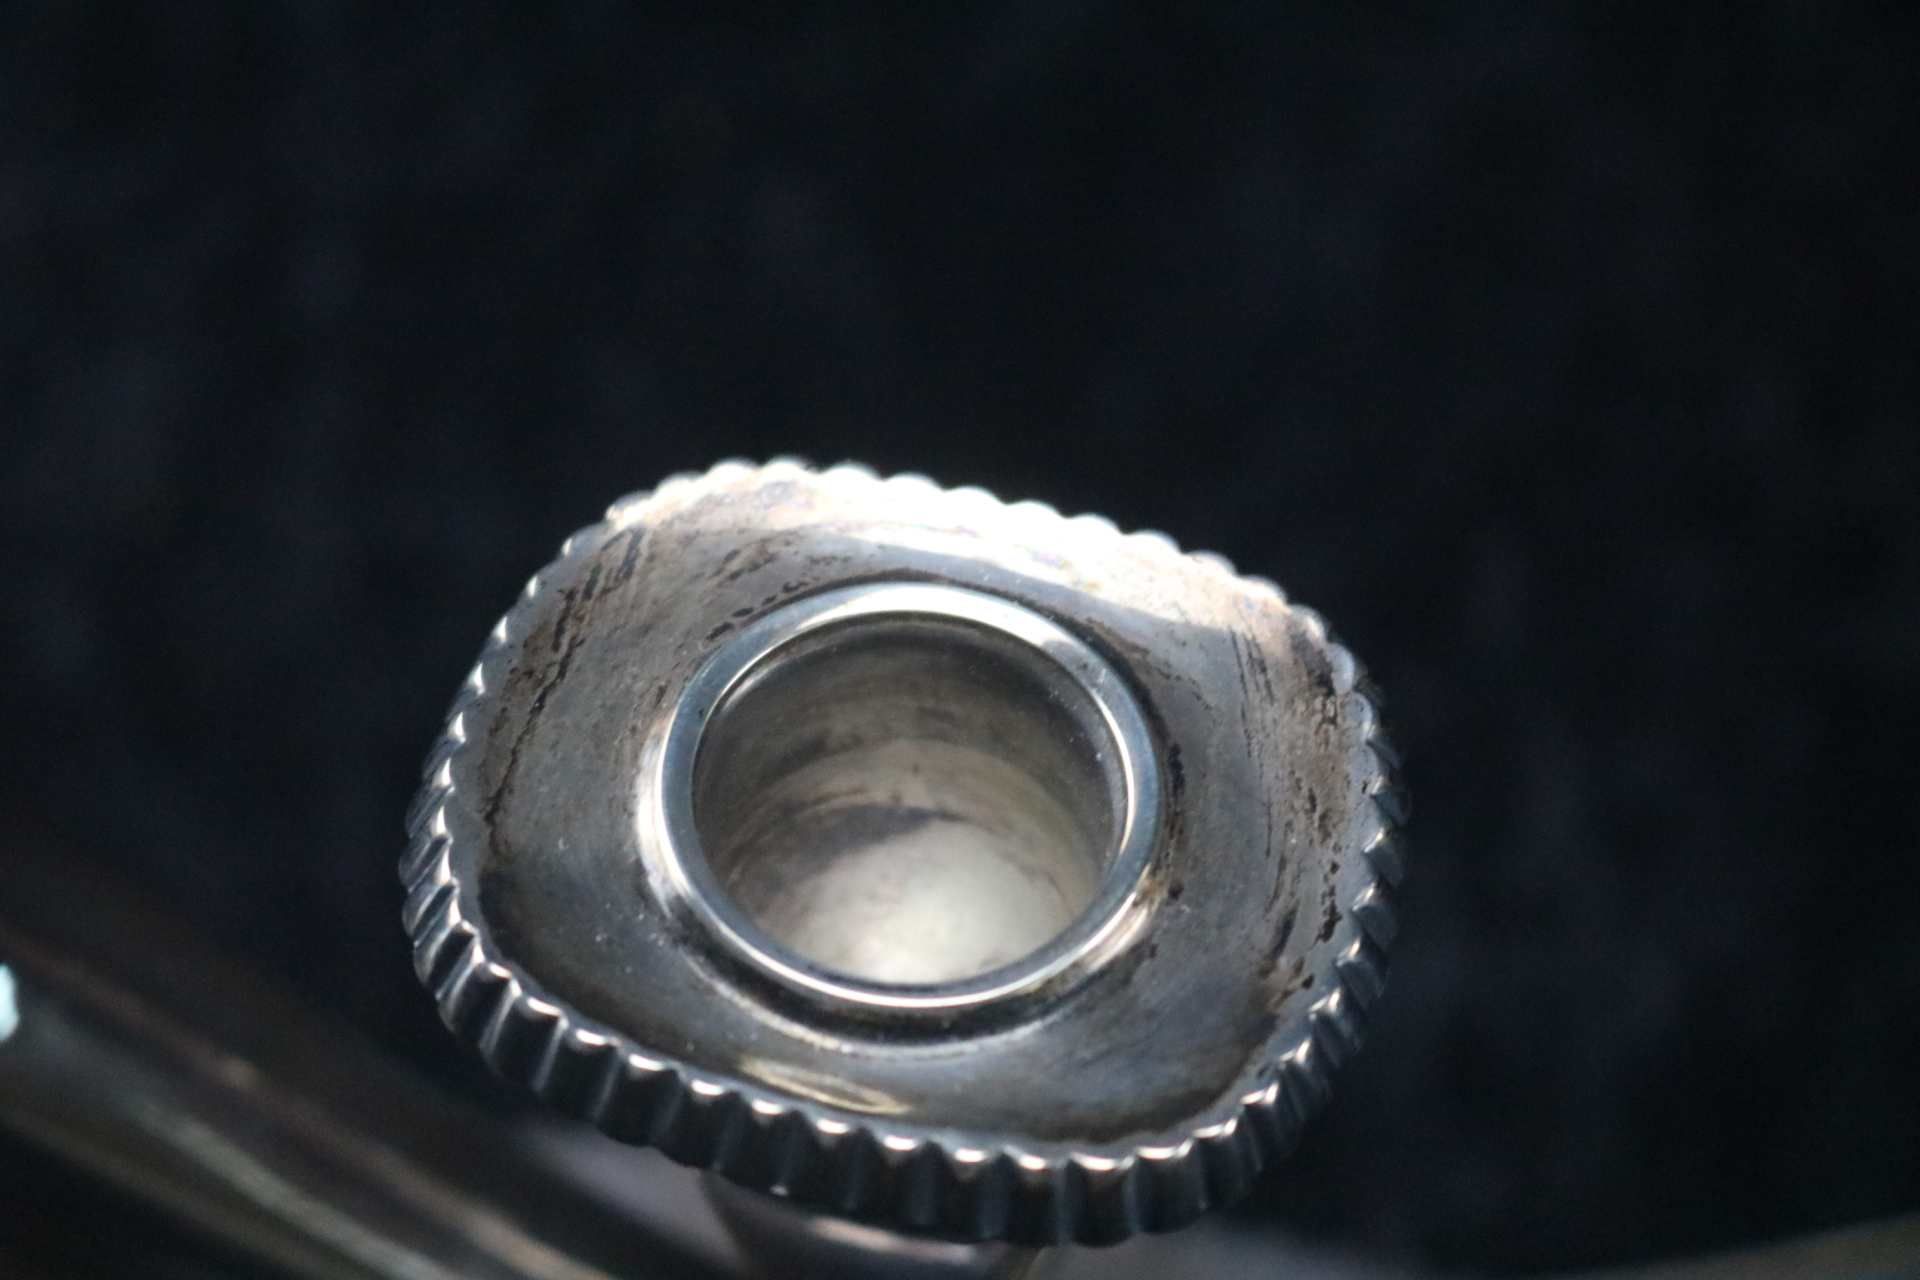 5-armiger Kerzenleuchter 925 Sterling Silber, Nieren-Stil auf ovalem Fuß, nicht gefüllt, Mitte - Bild 3 aus 6